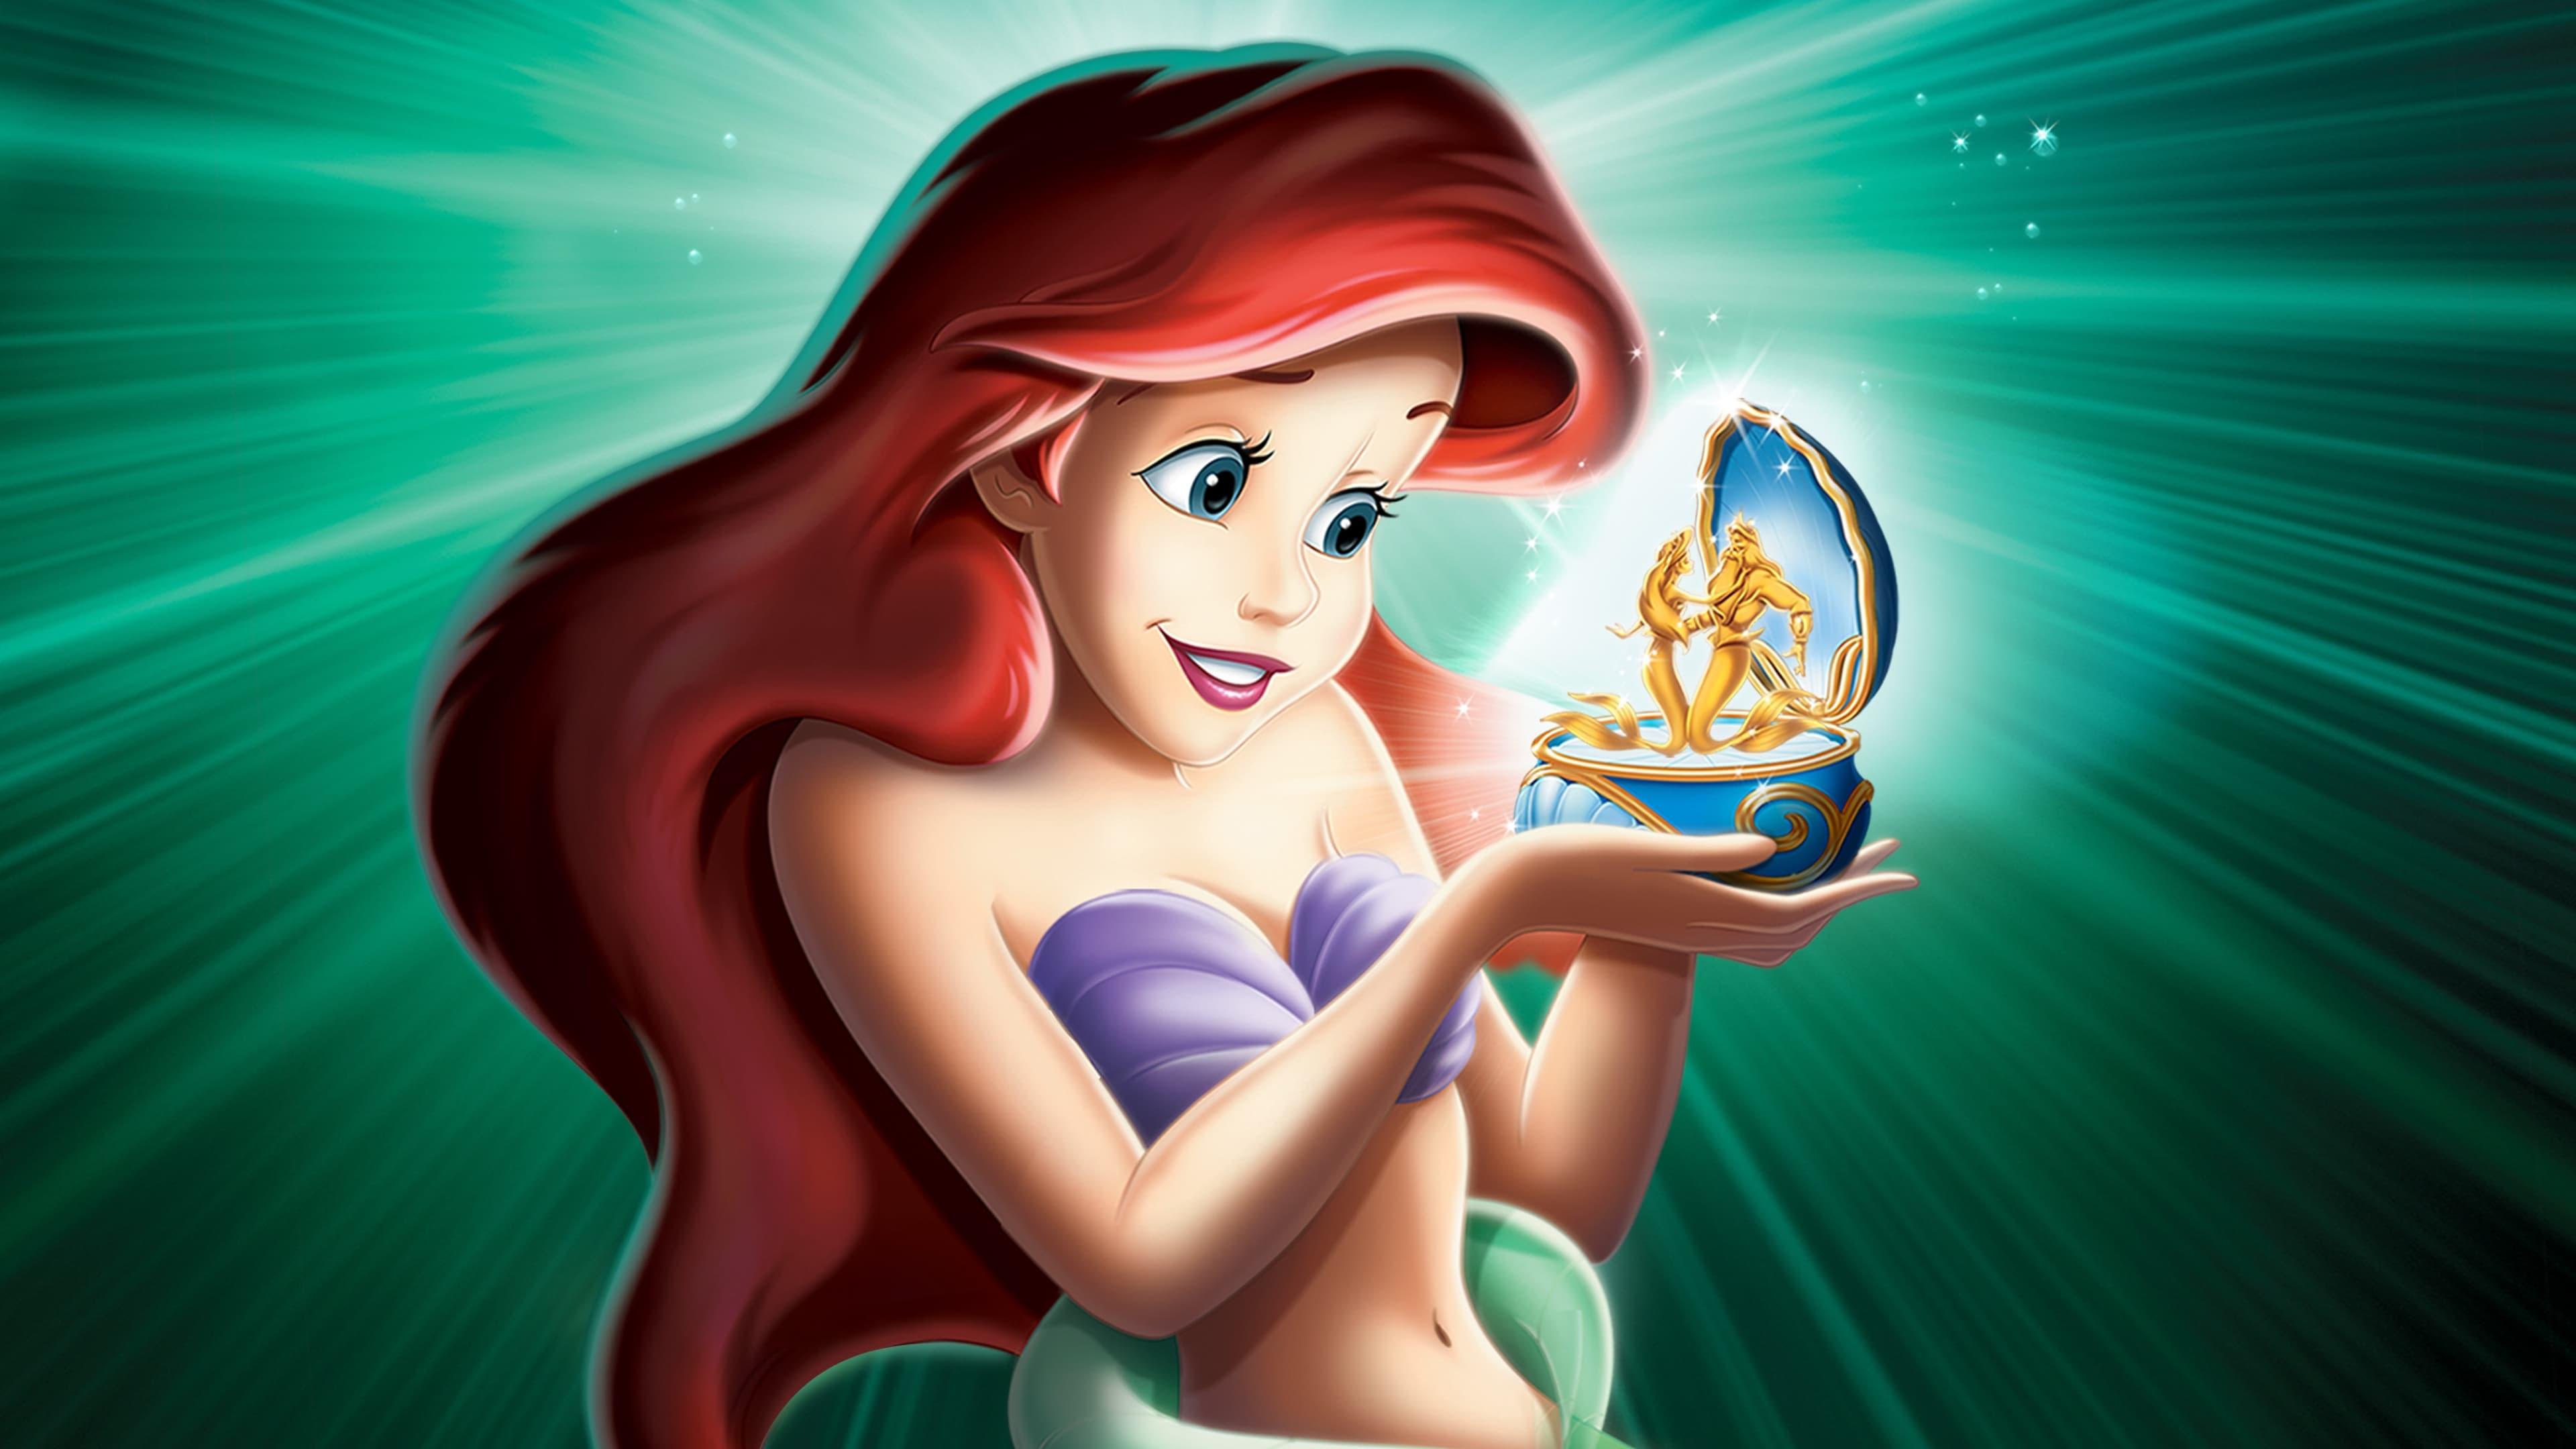 The Little Mermaid: Ariel's Beginning backdrop